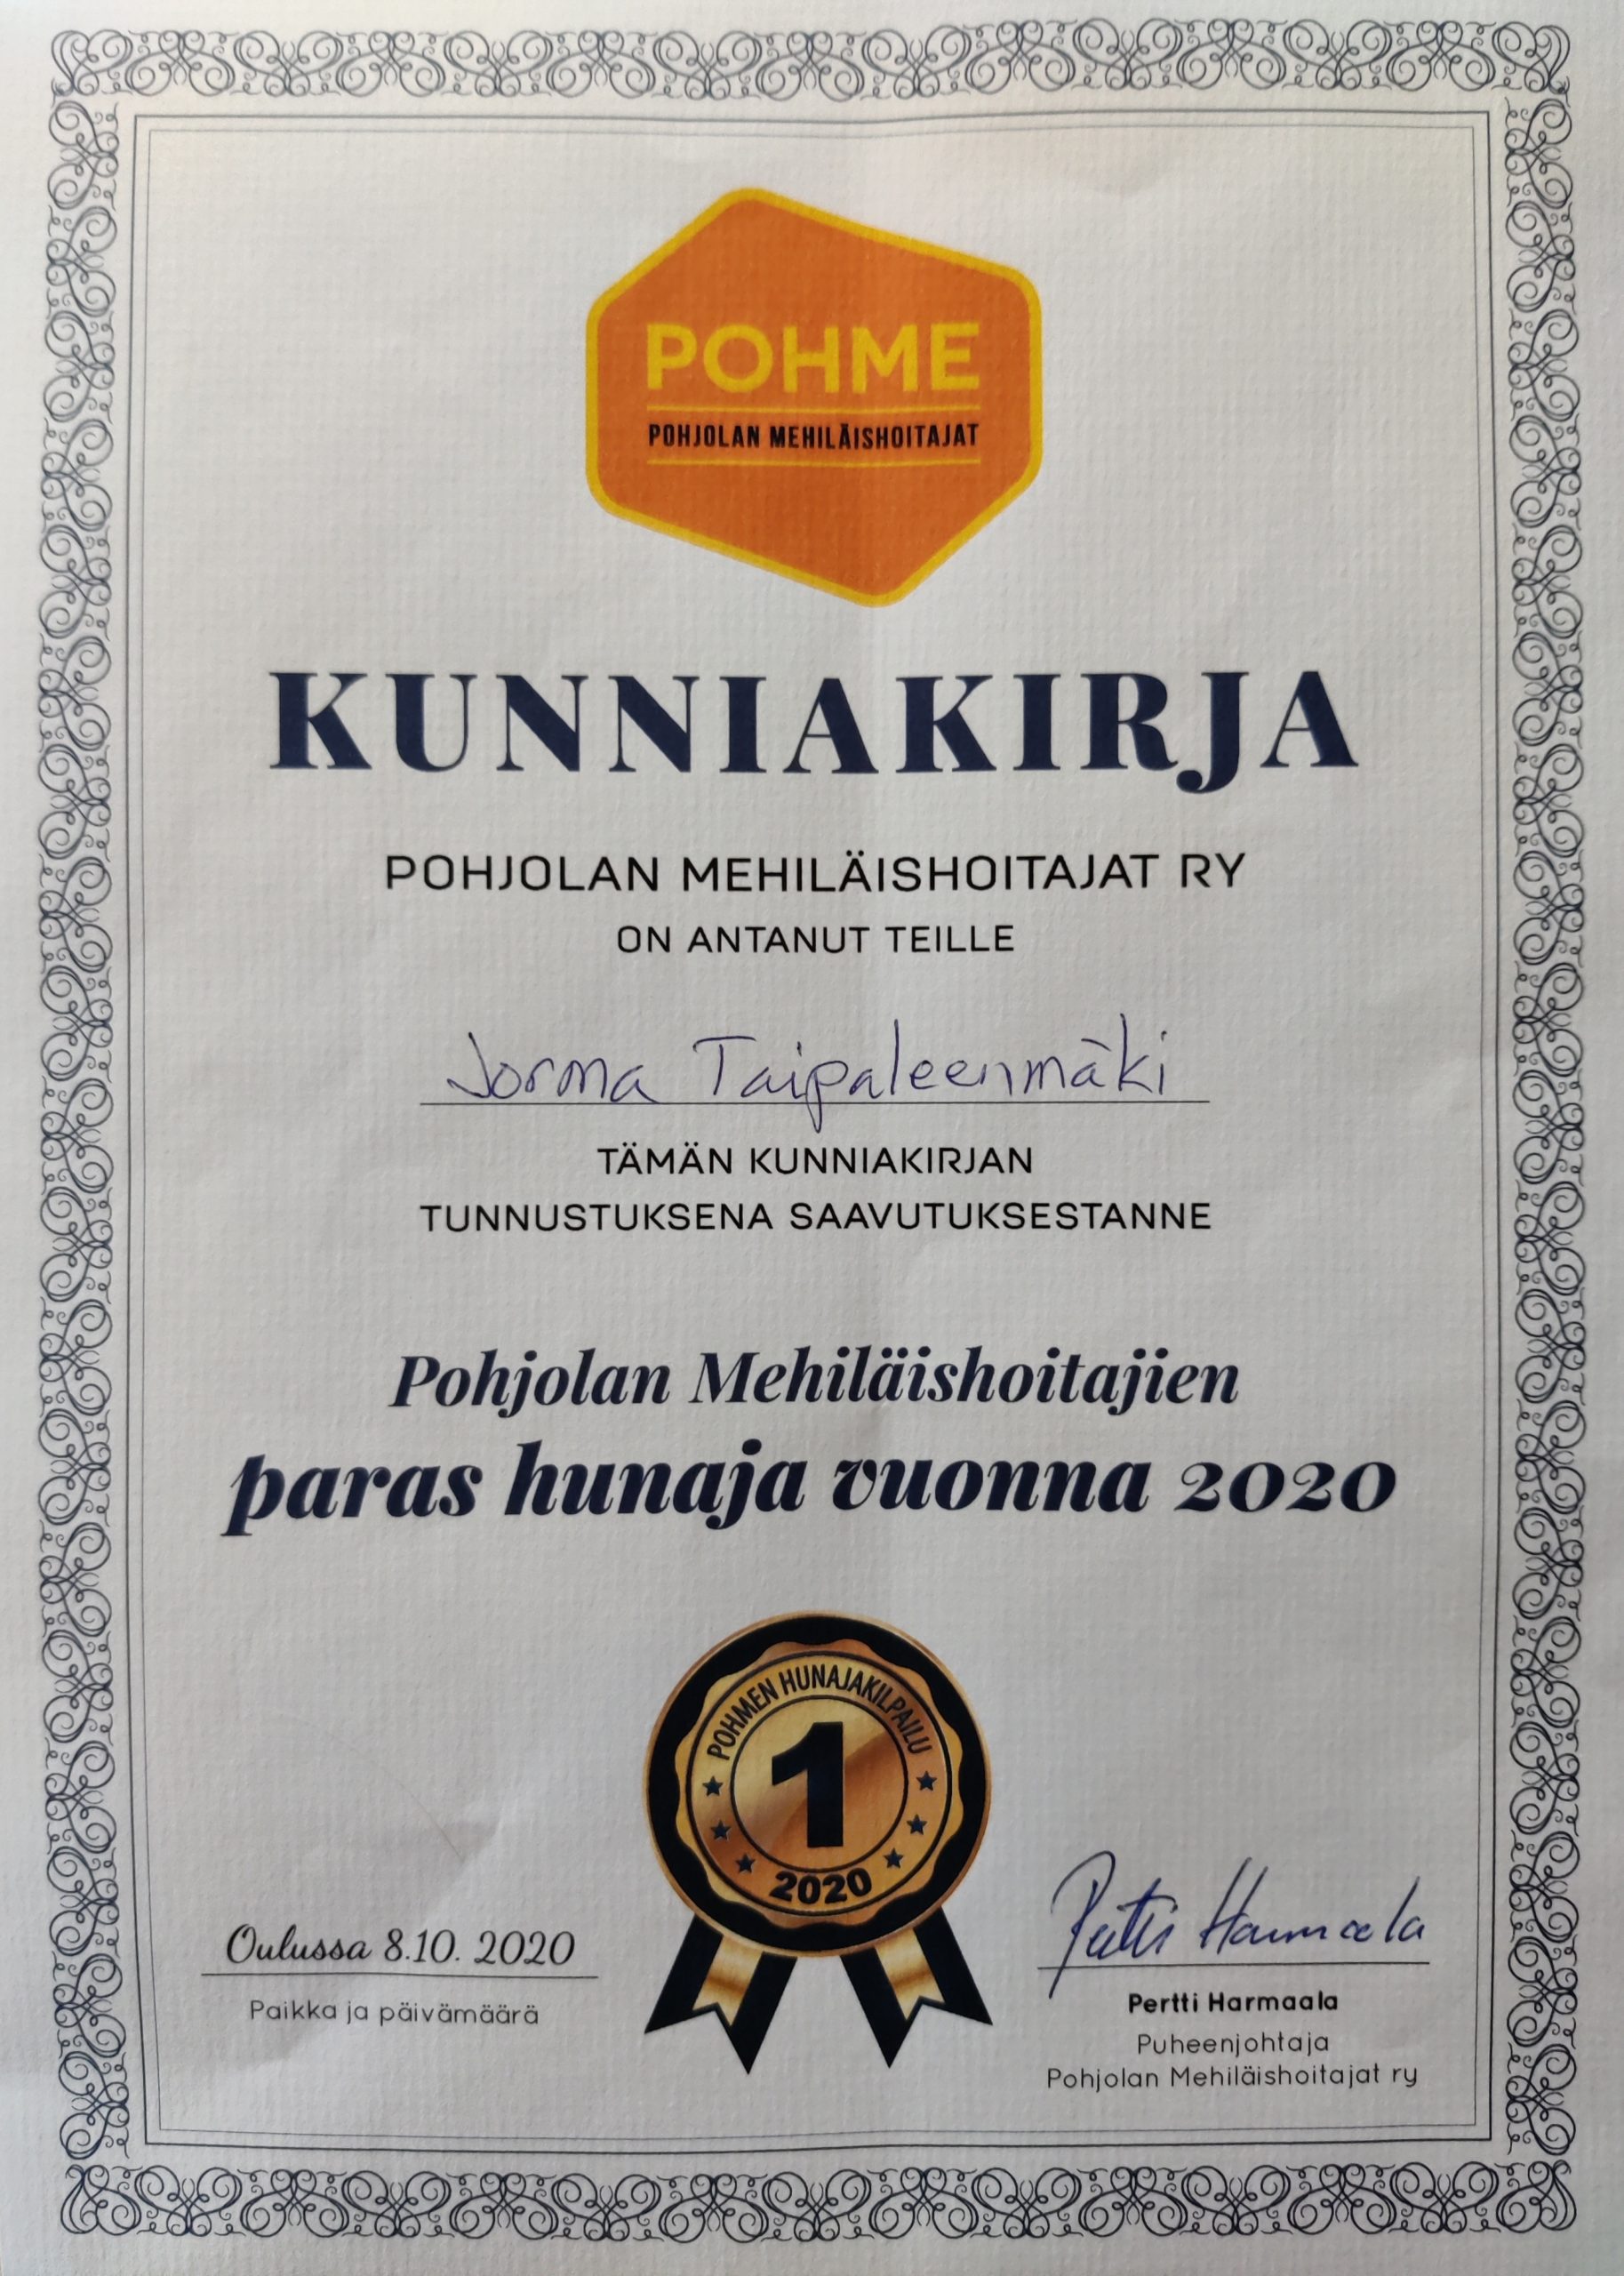 Pohjolan mehiläishoitajien paikallisyhdistyksen kilpailun voittajahunaja 2020 Jorma Taipaleenmäki